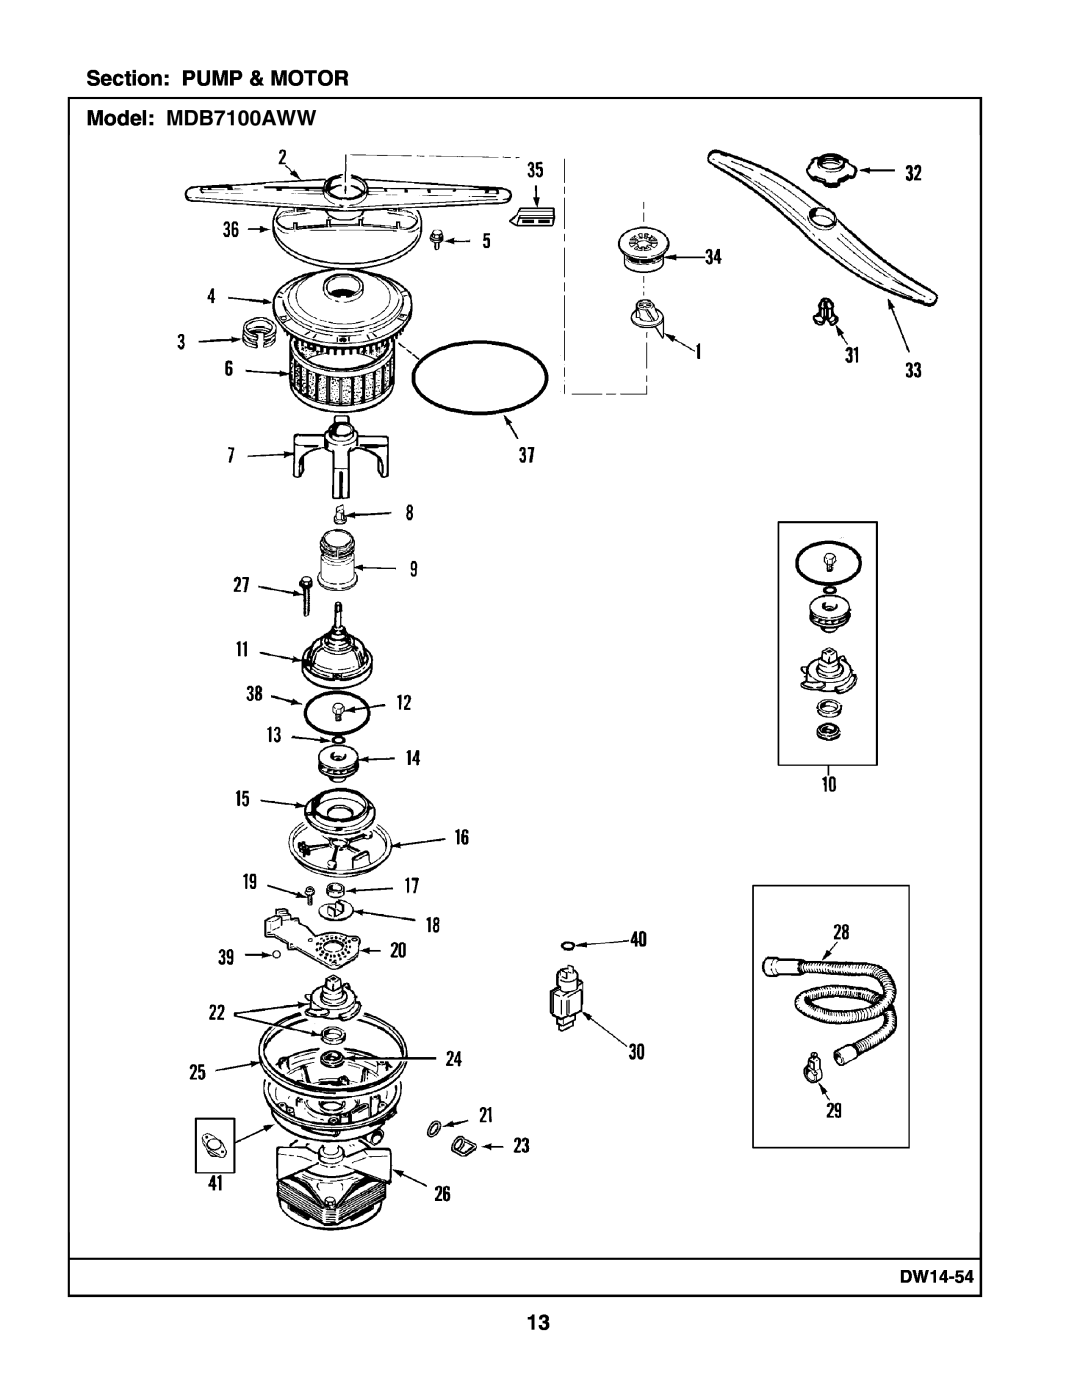 Maytag manual Section PUMP & MOTOR Model MDB7100AWW, DW14-54 